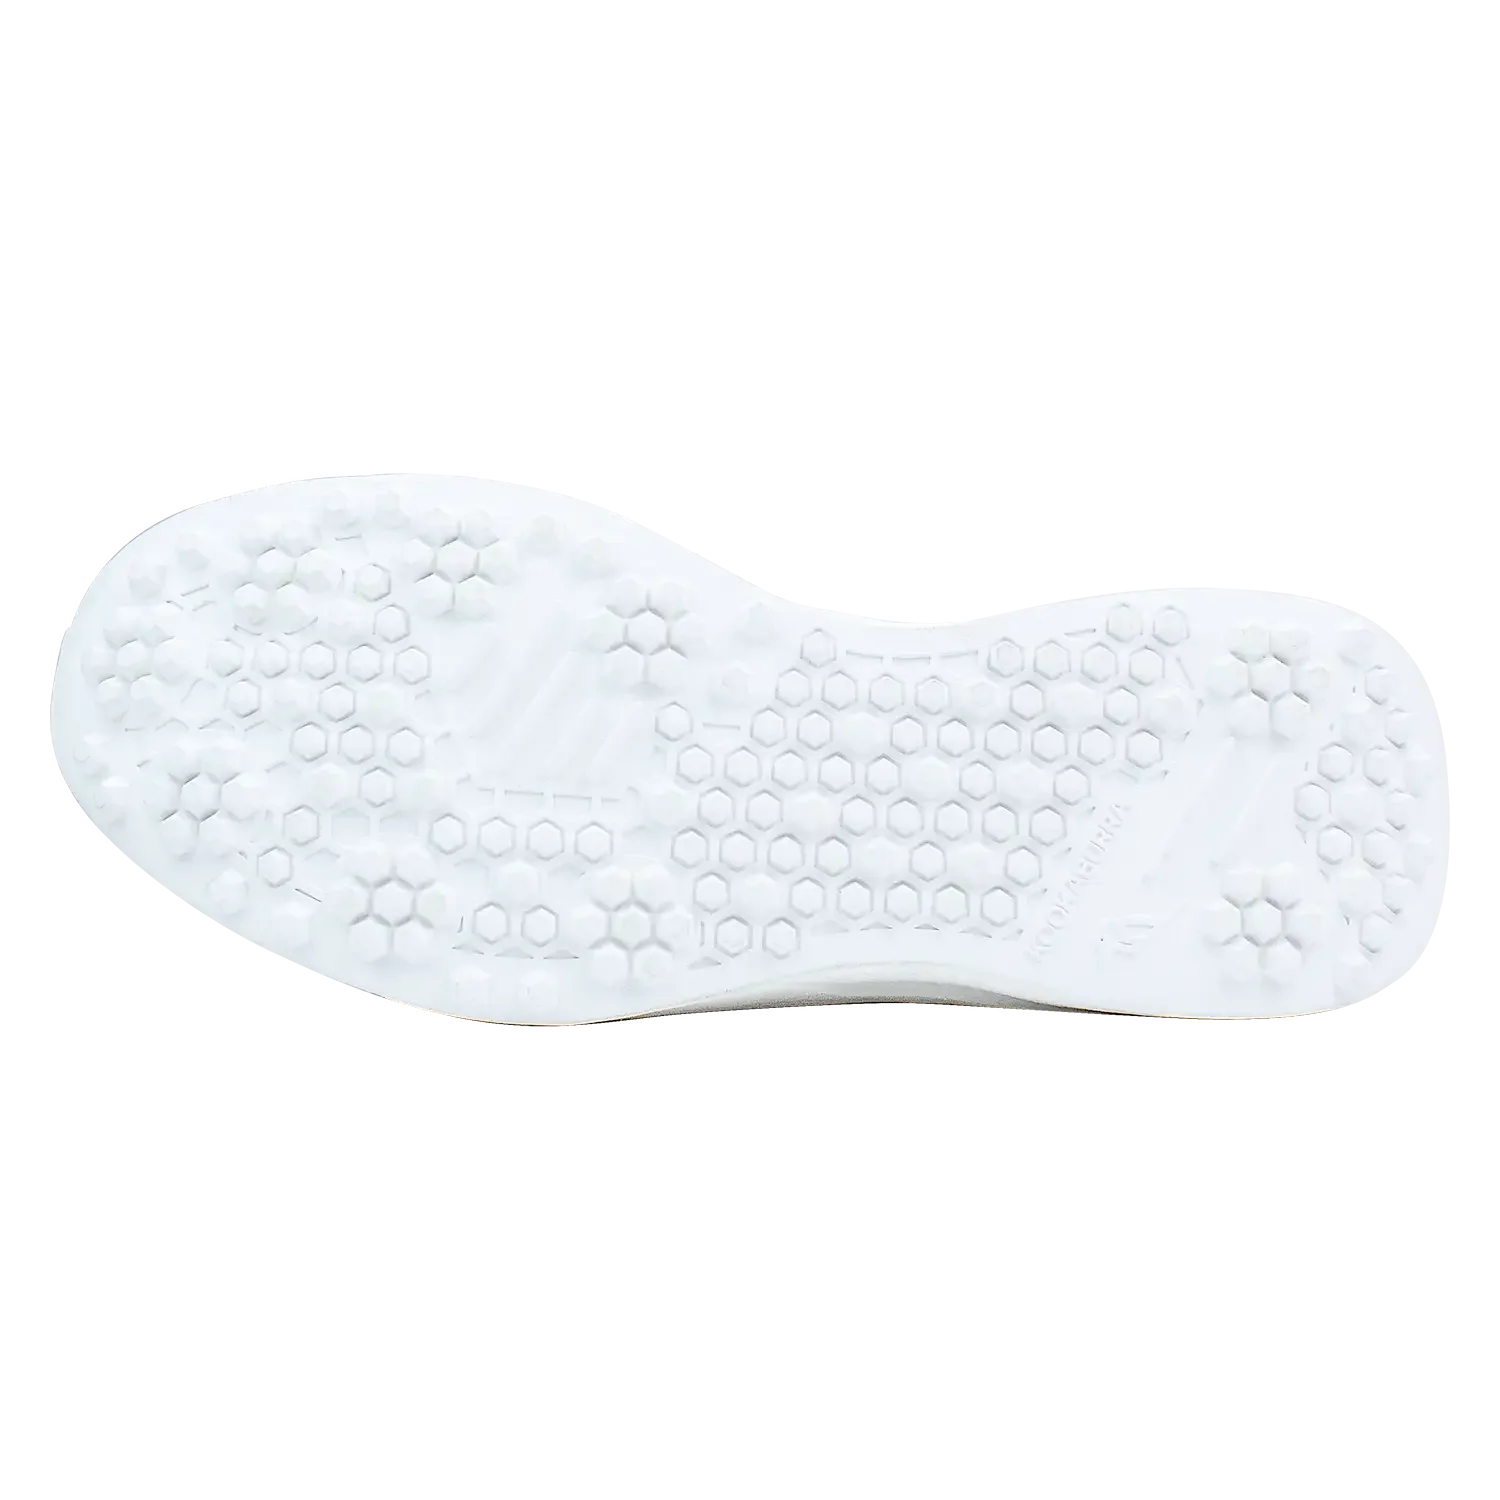 Kookaburra KC Players Rubber Sole Cricket Shoes - FOOTWEAR - RUBBER SOLE